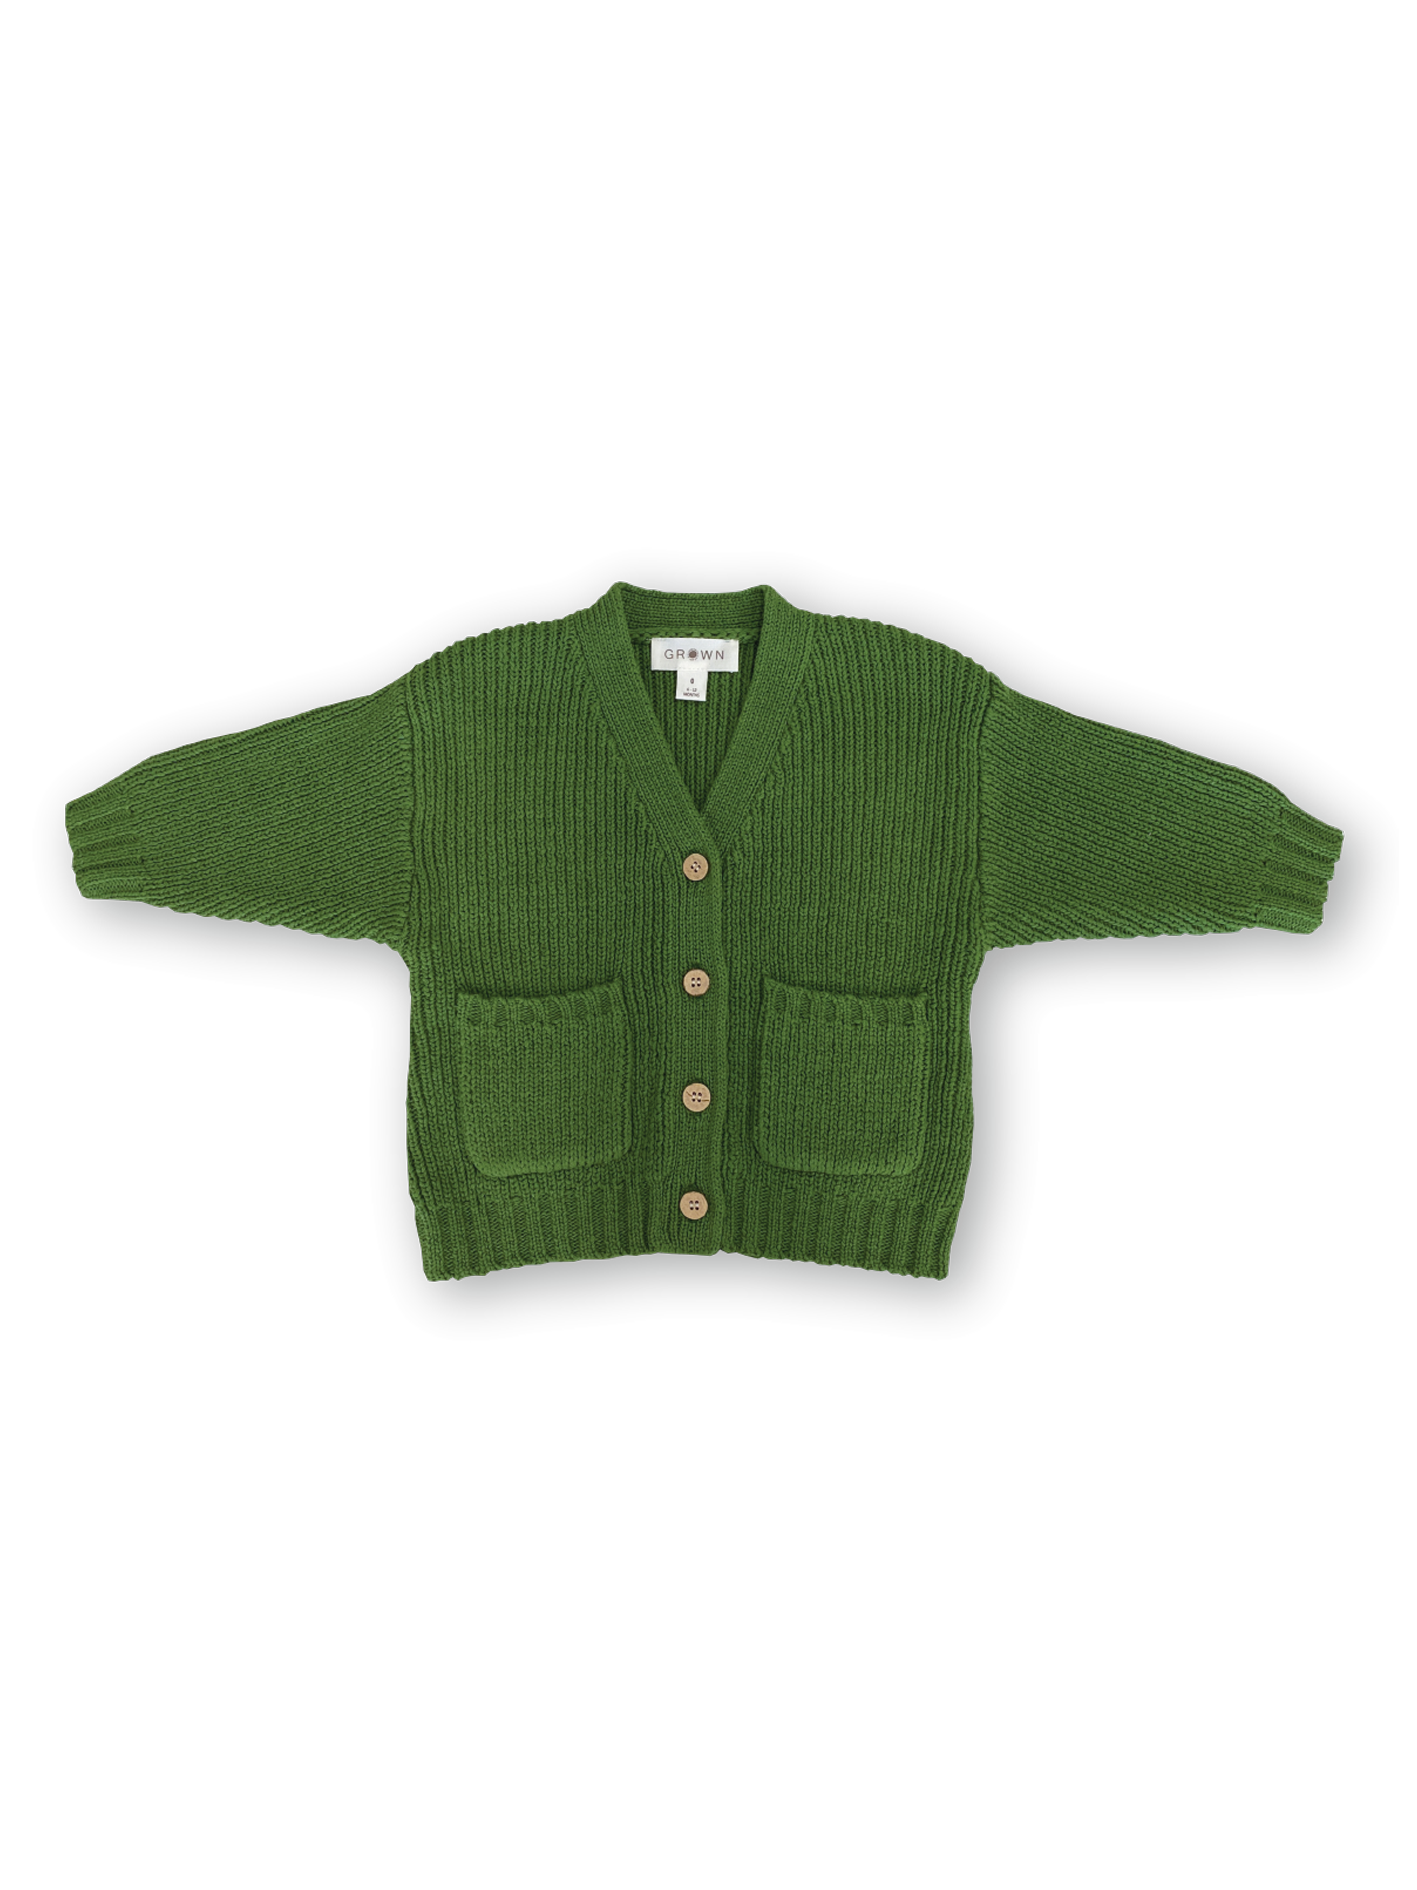 Grown - Pocket Cardigan - Verde